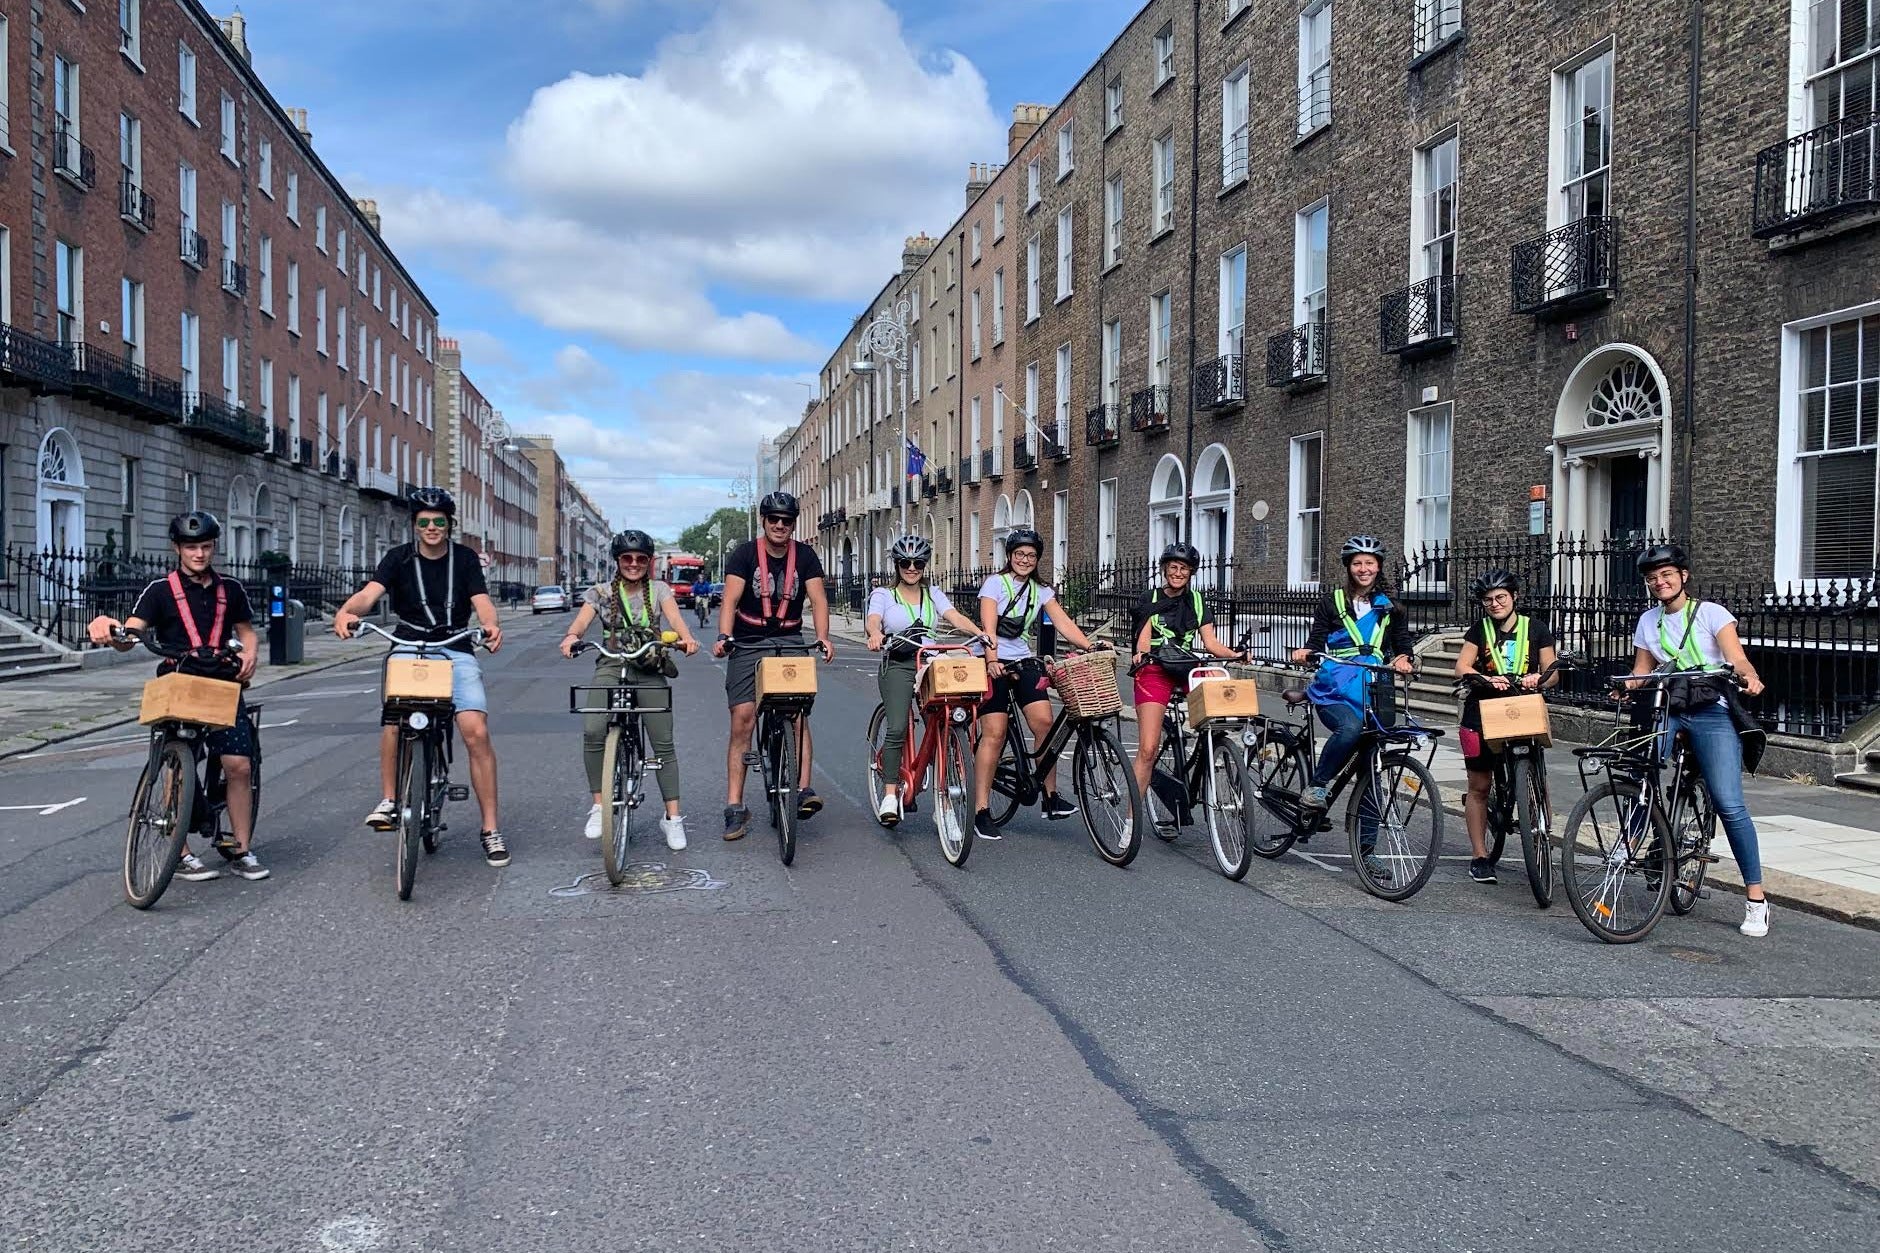 Tour de bicicleta por Dublin